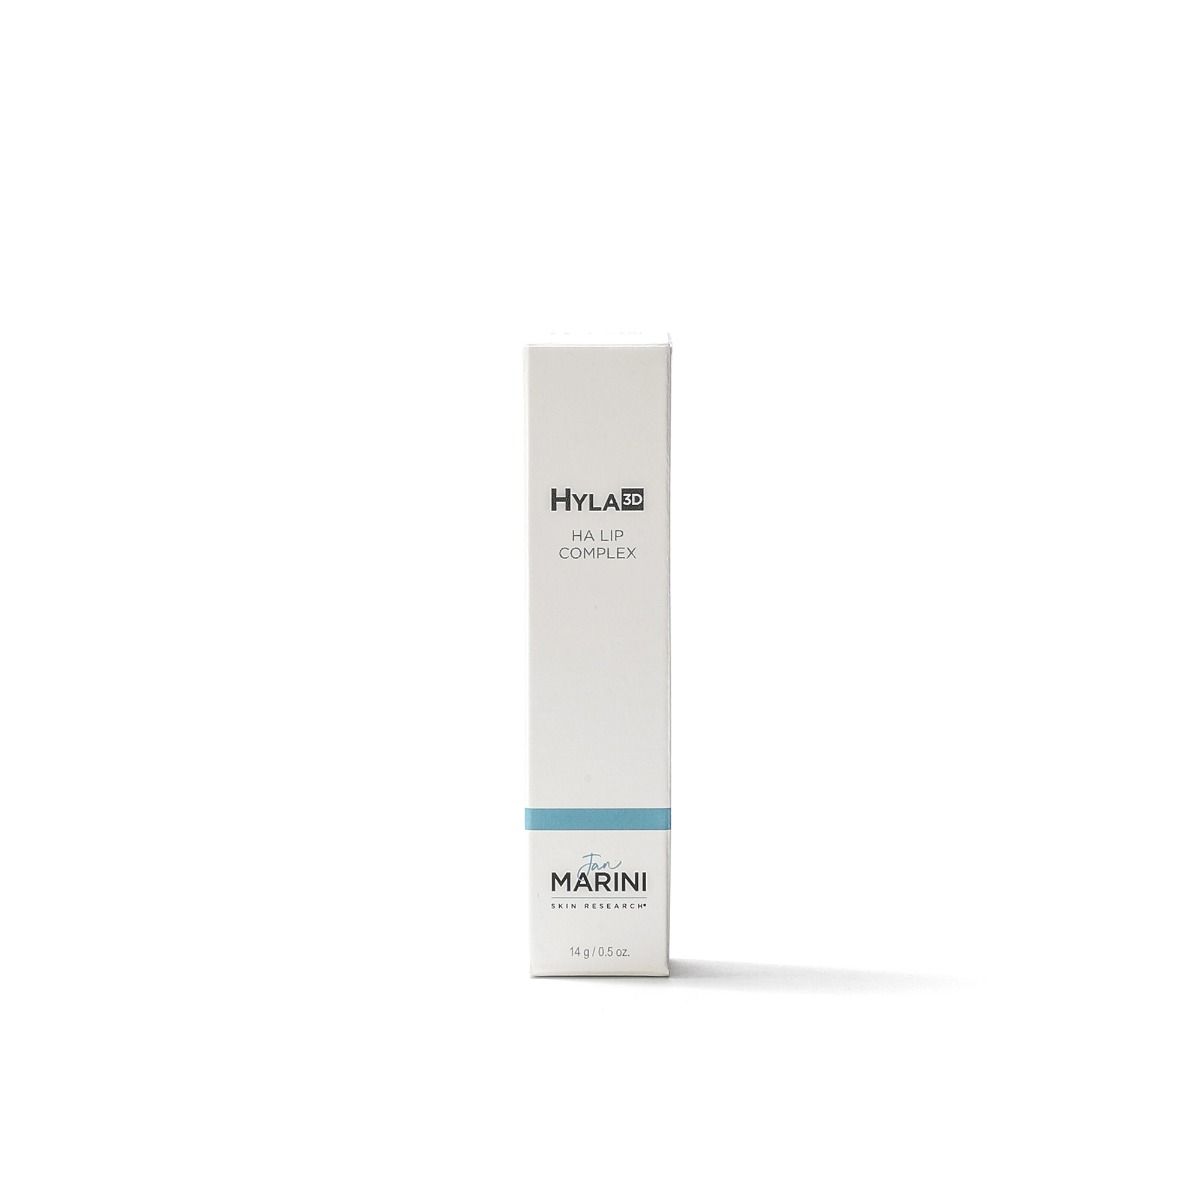 Hyla3D™ HA Lip Complex - Pearl Skin Studio